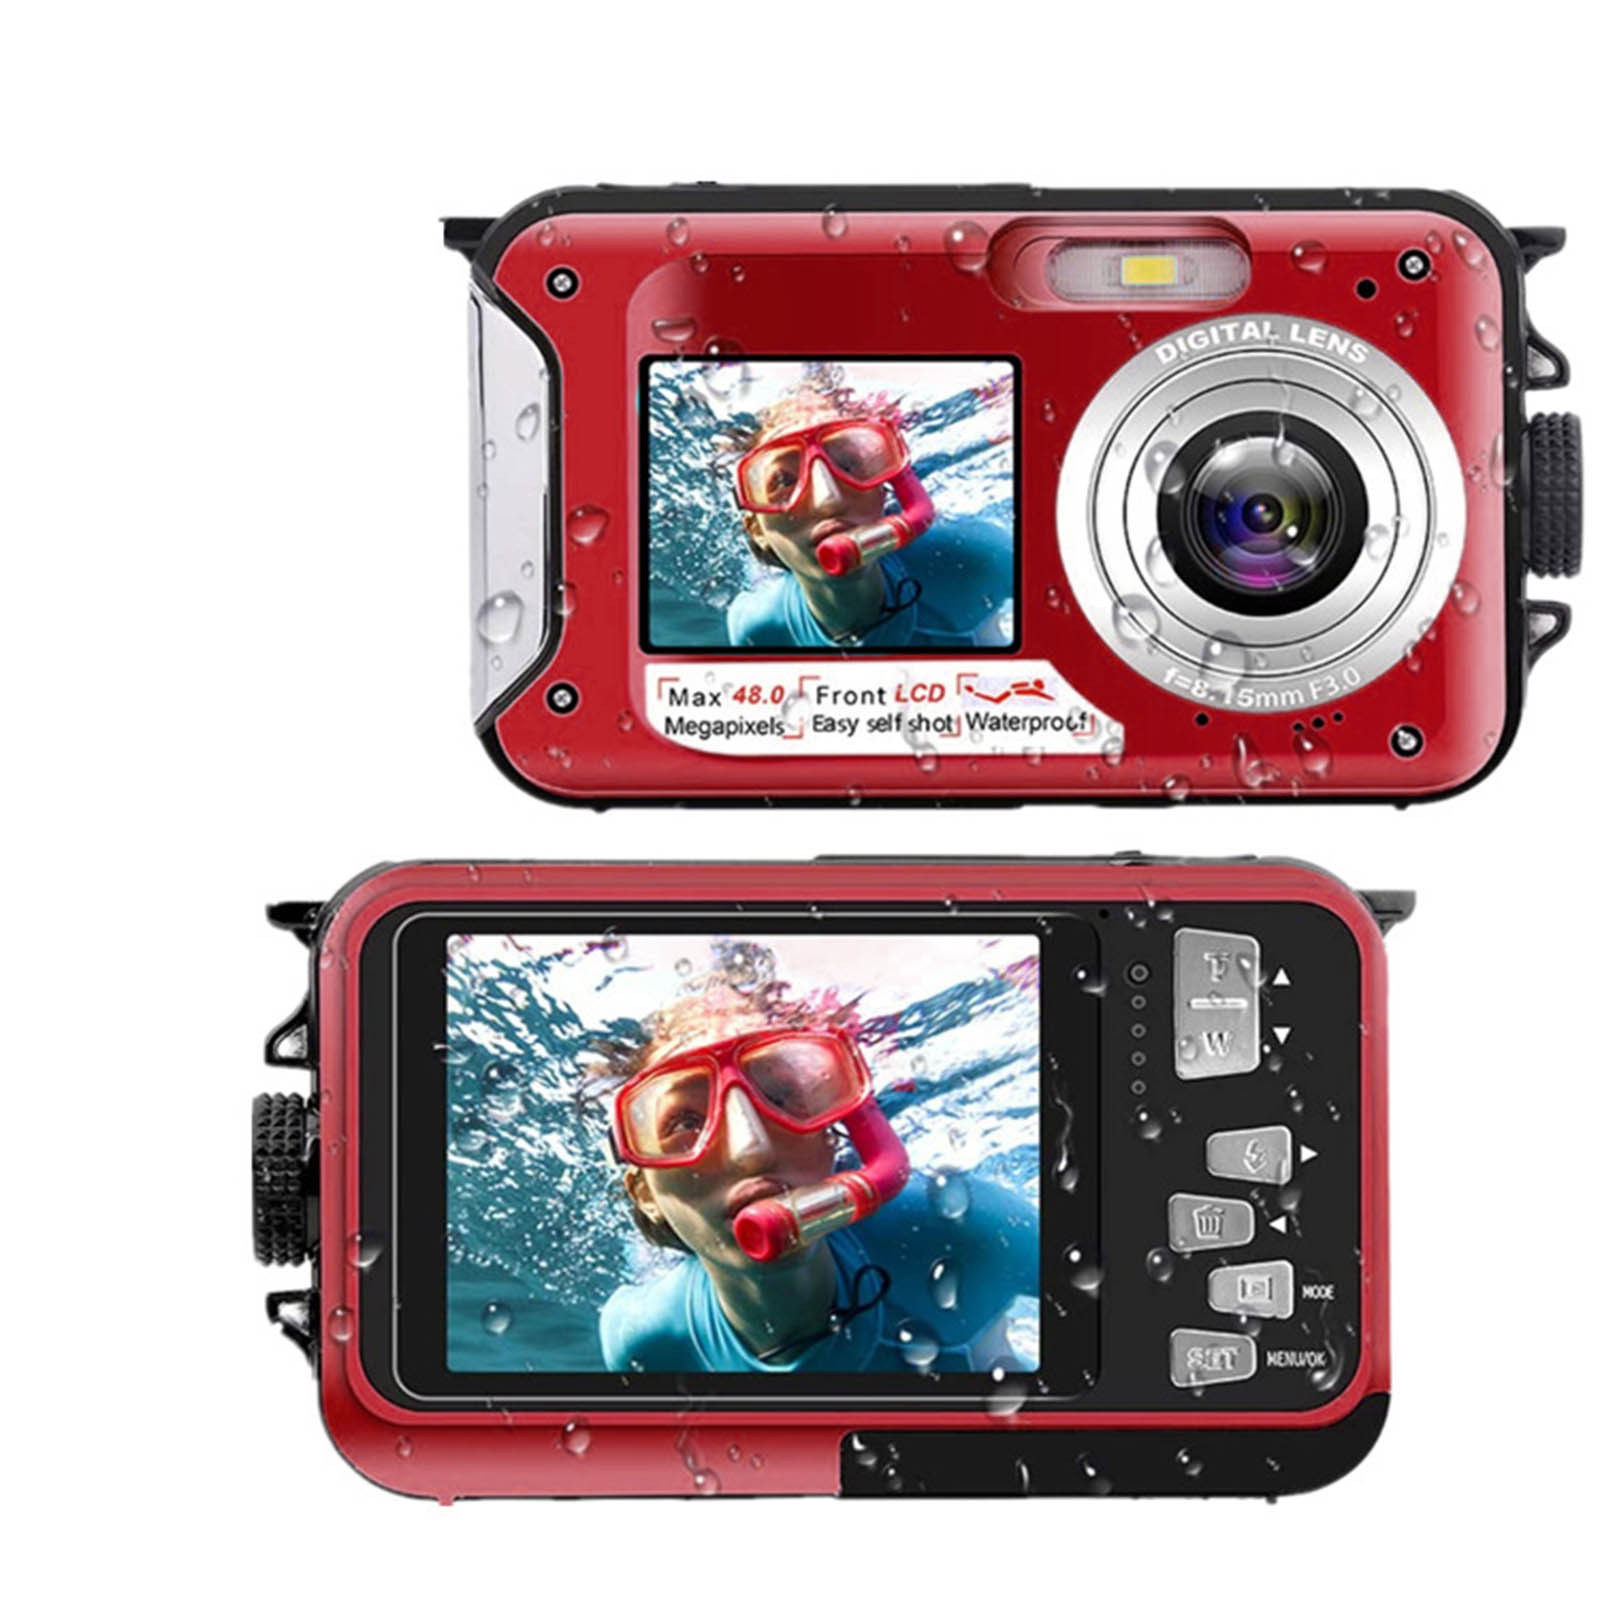 Feltree Electronics Accessories Waterproof Camera Underwater Cameras For Snorkeling Full HD 2.7K 48MP Video Recorder Selfie Dual Screens 10FT 16X Digital Zoom Waterproof Digital Camera - image 1 of 6